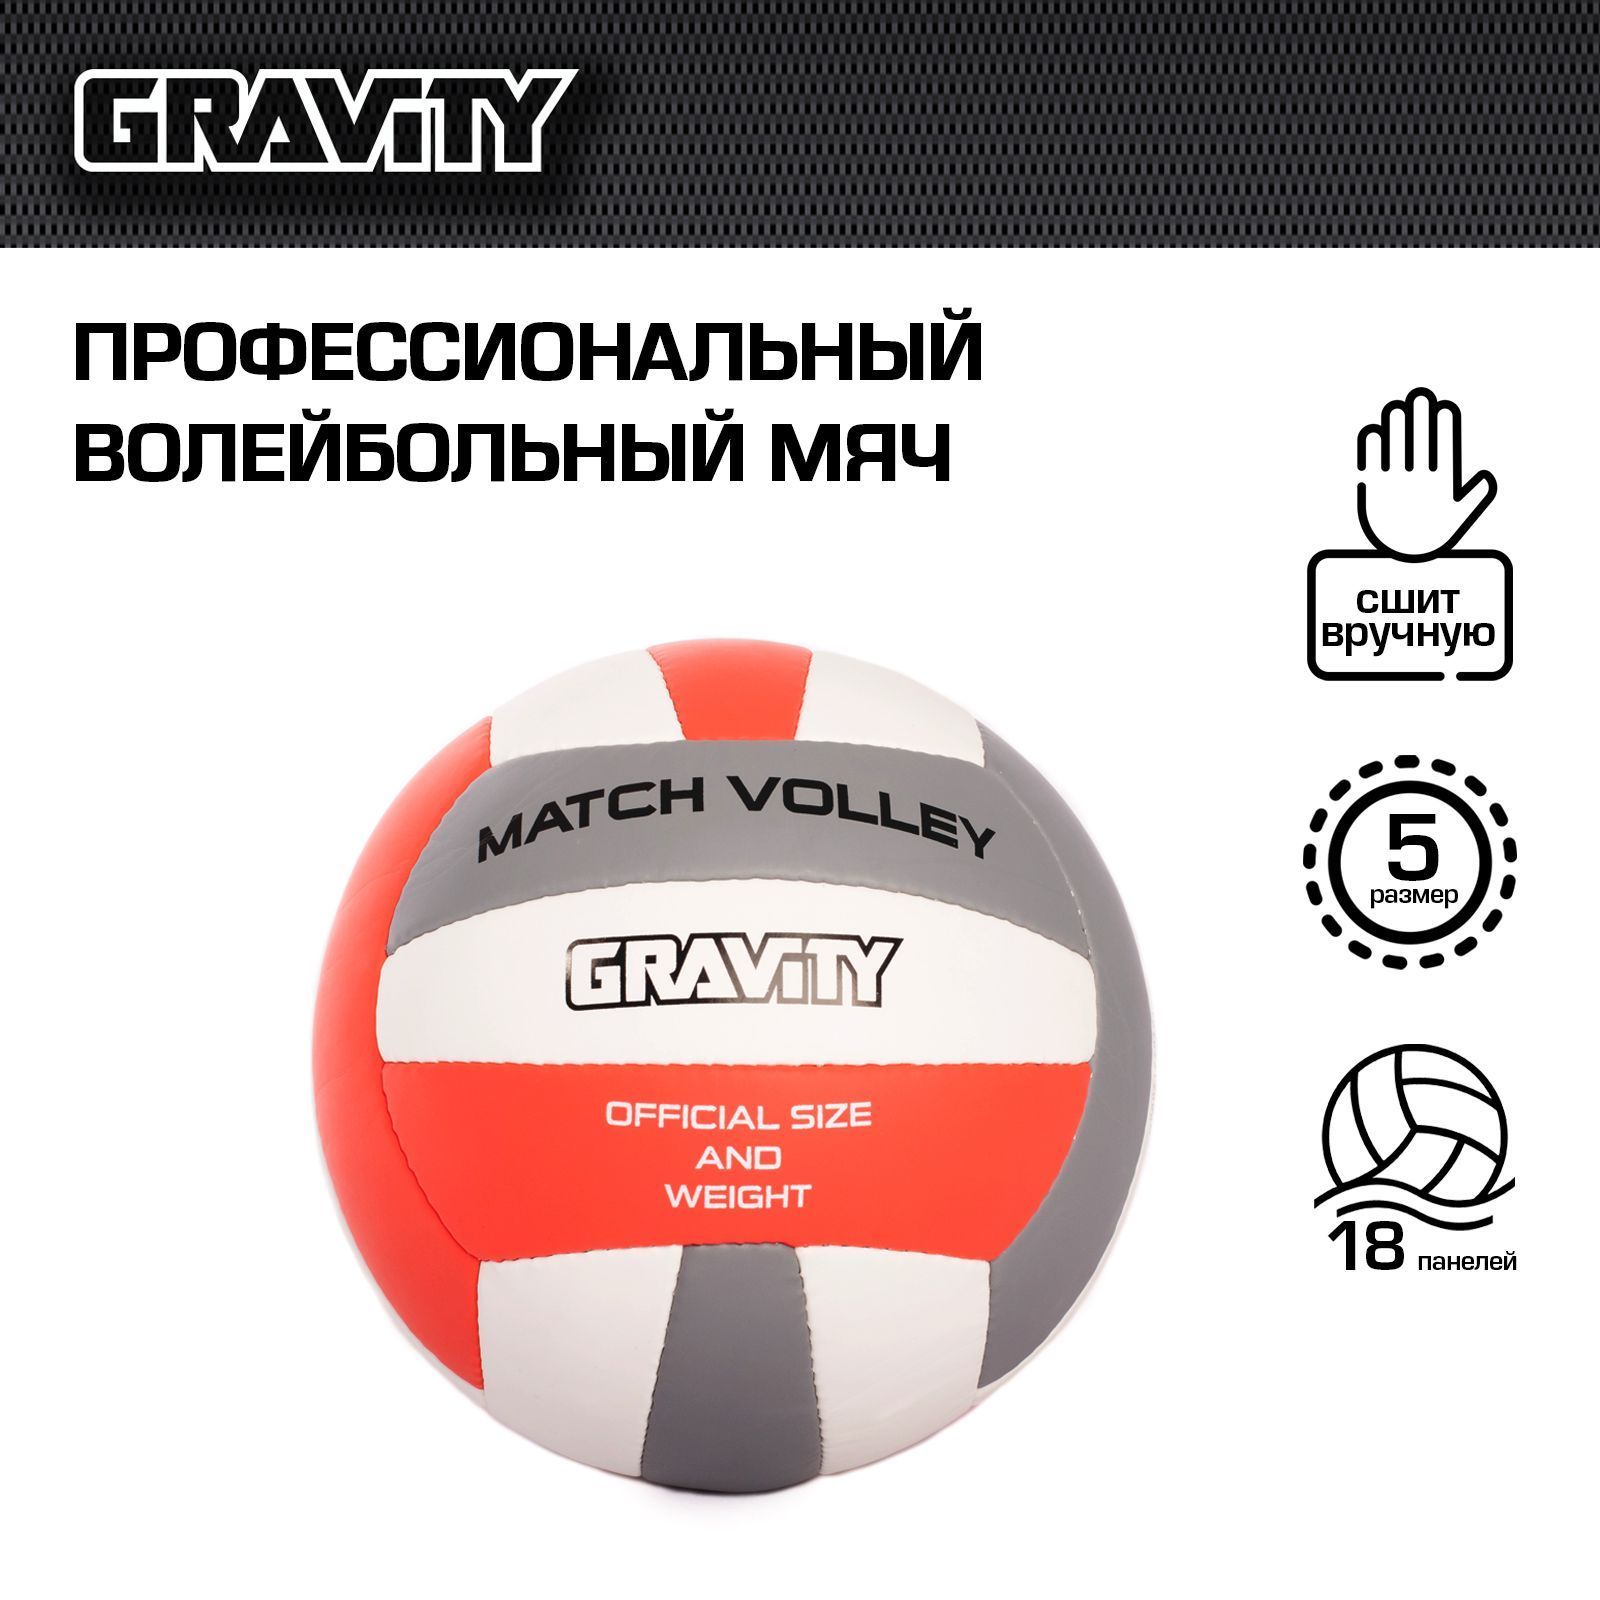 Волейбольный мяч Gravity, ручная сшивка, MATCH VOLLEY